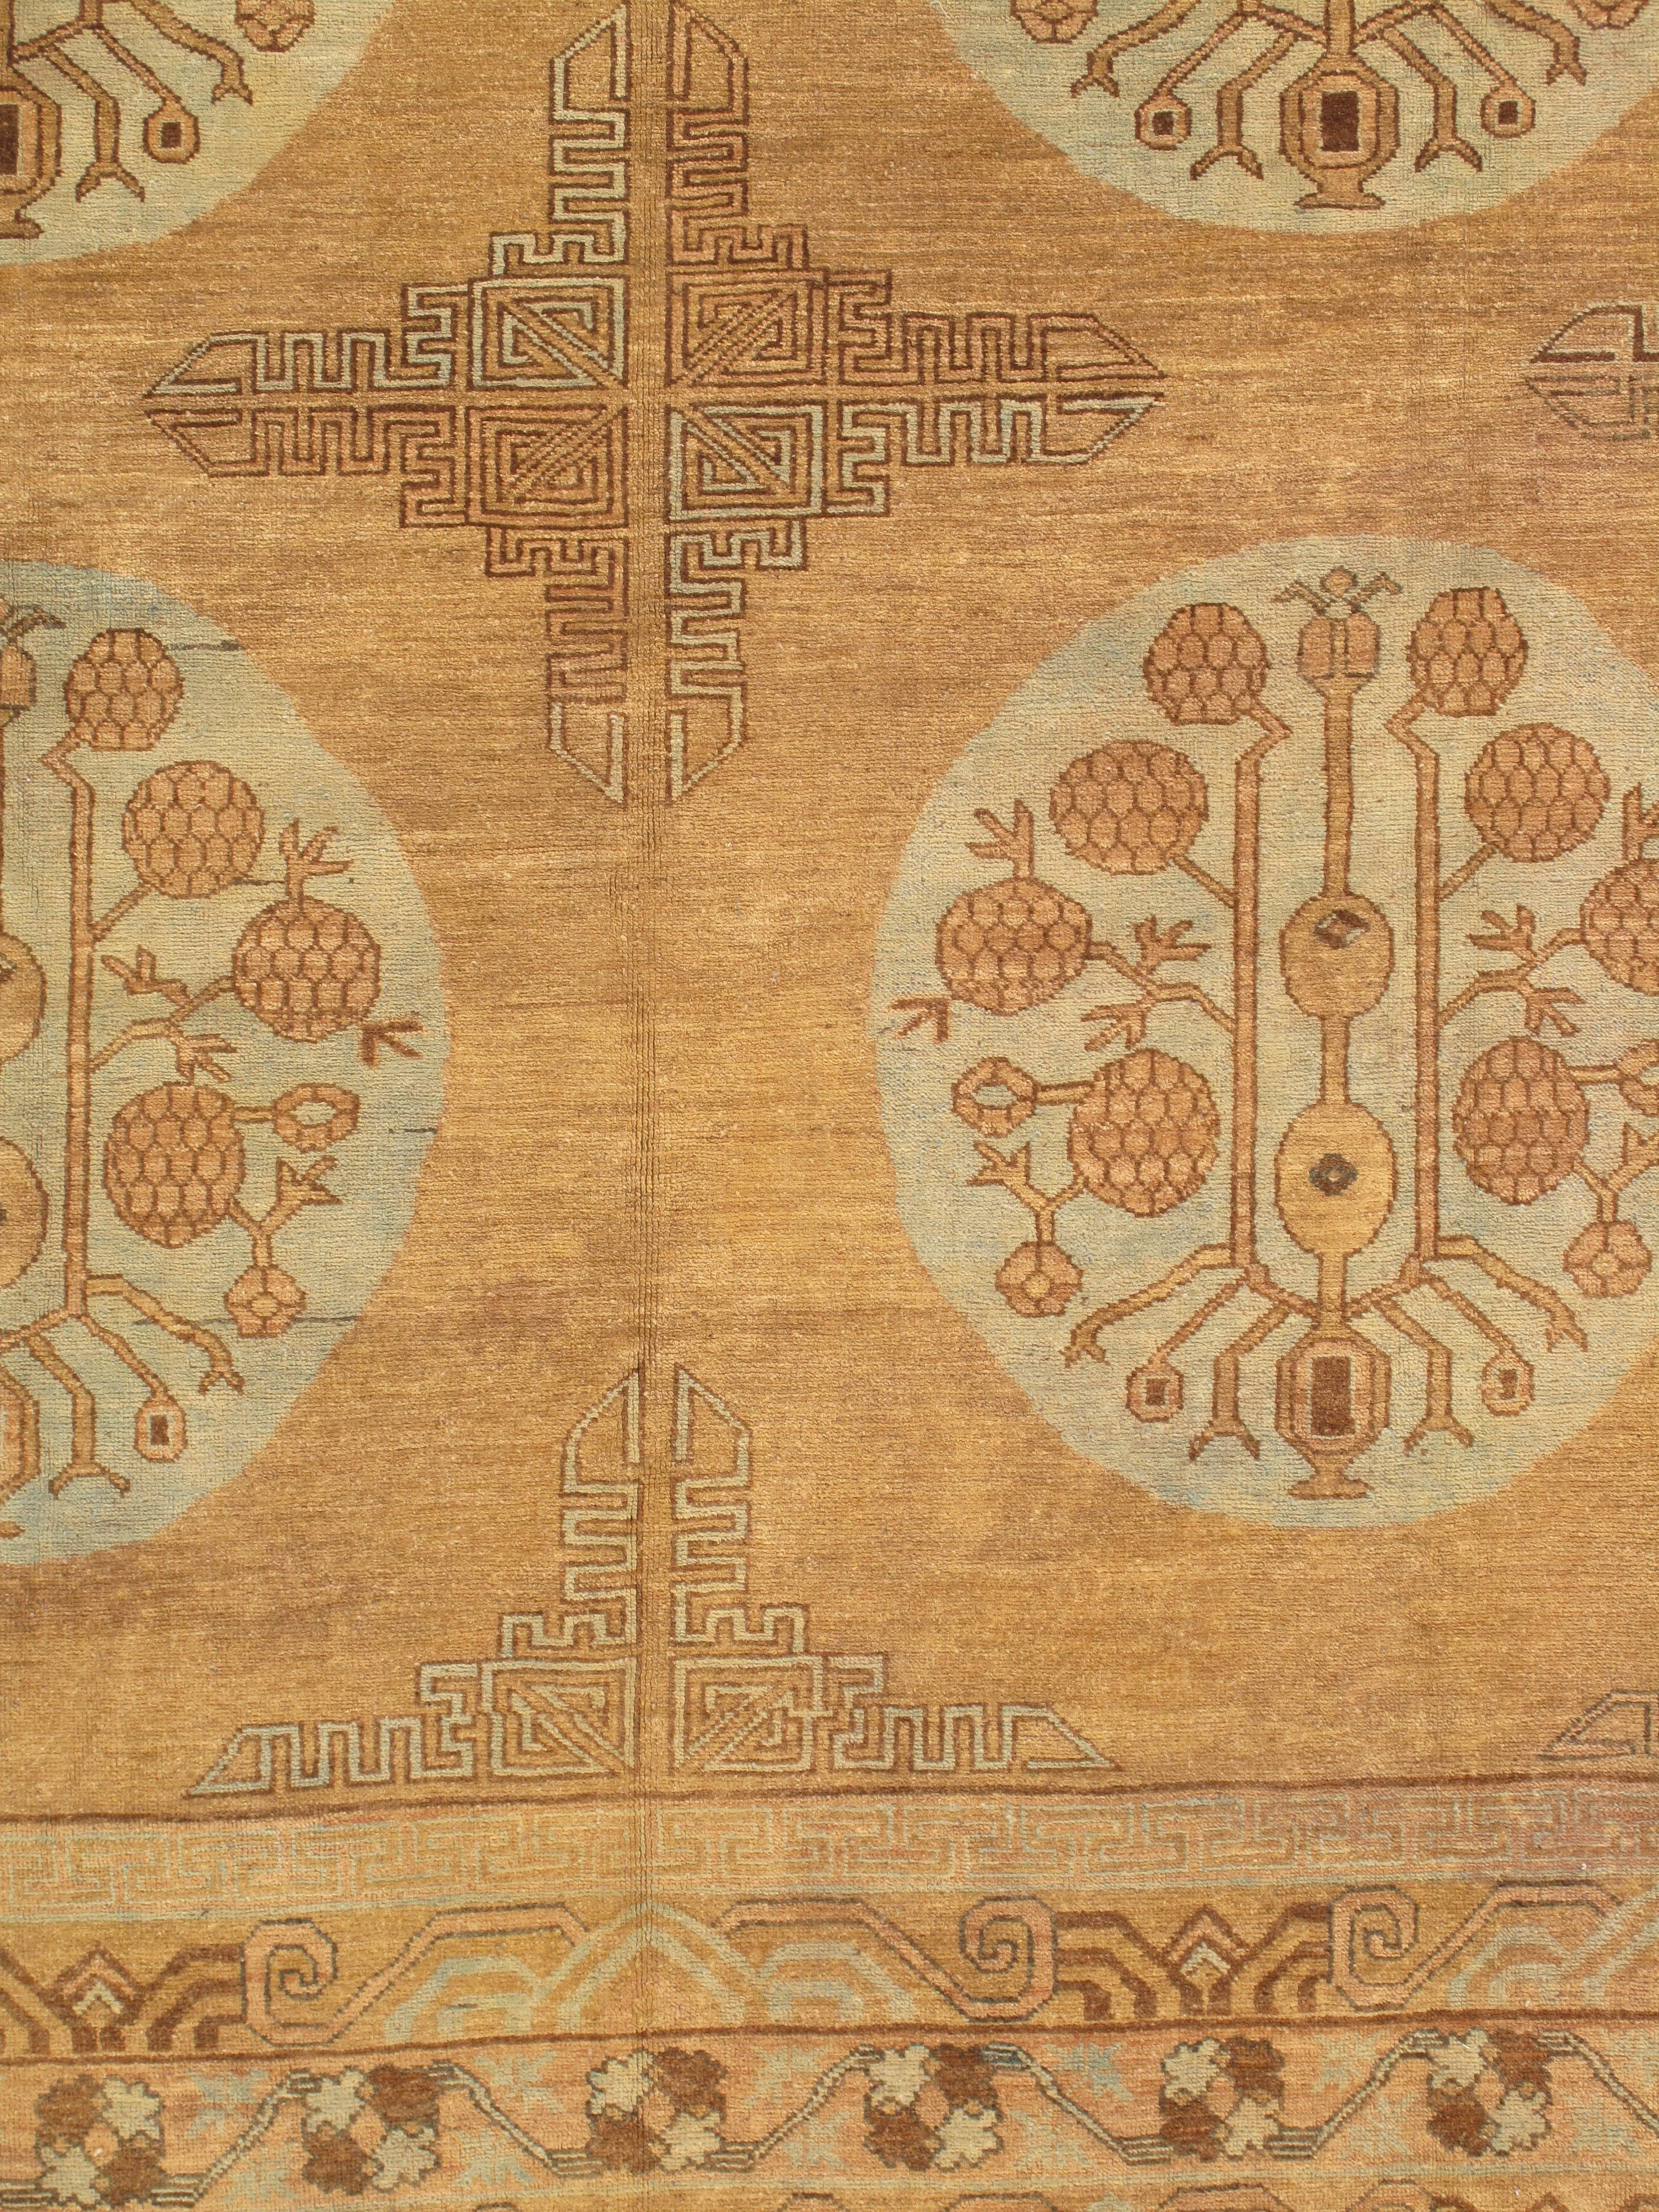 Vintage-Teppiche aus Khotan sind exquisite Webkunstwerke, die aus der alten Oasenstadt Khotan stammen, die an der alten Seidenstraße in der heutigen autonomen Region Xinjiang-Uigurien in China liegt. Diese Teppiche werden für ihre einzigartige